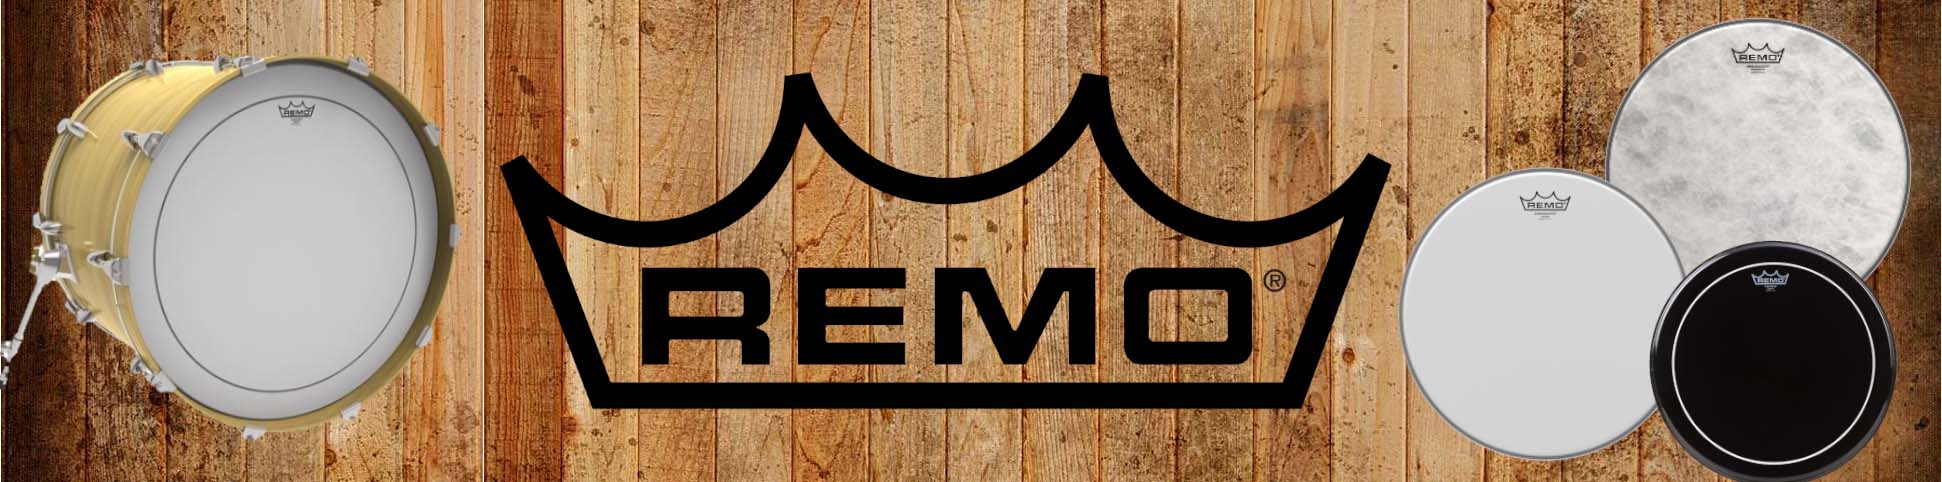 Remo RemO